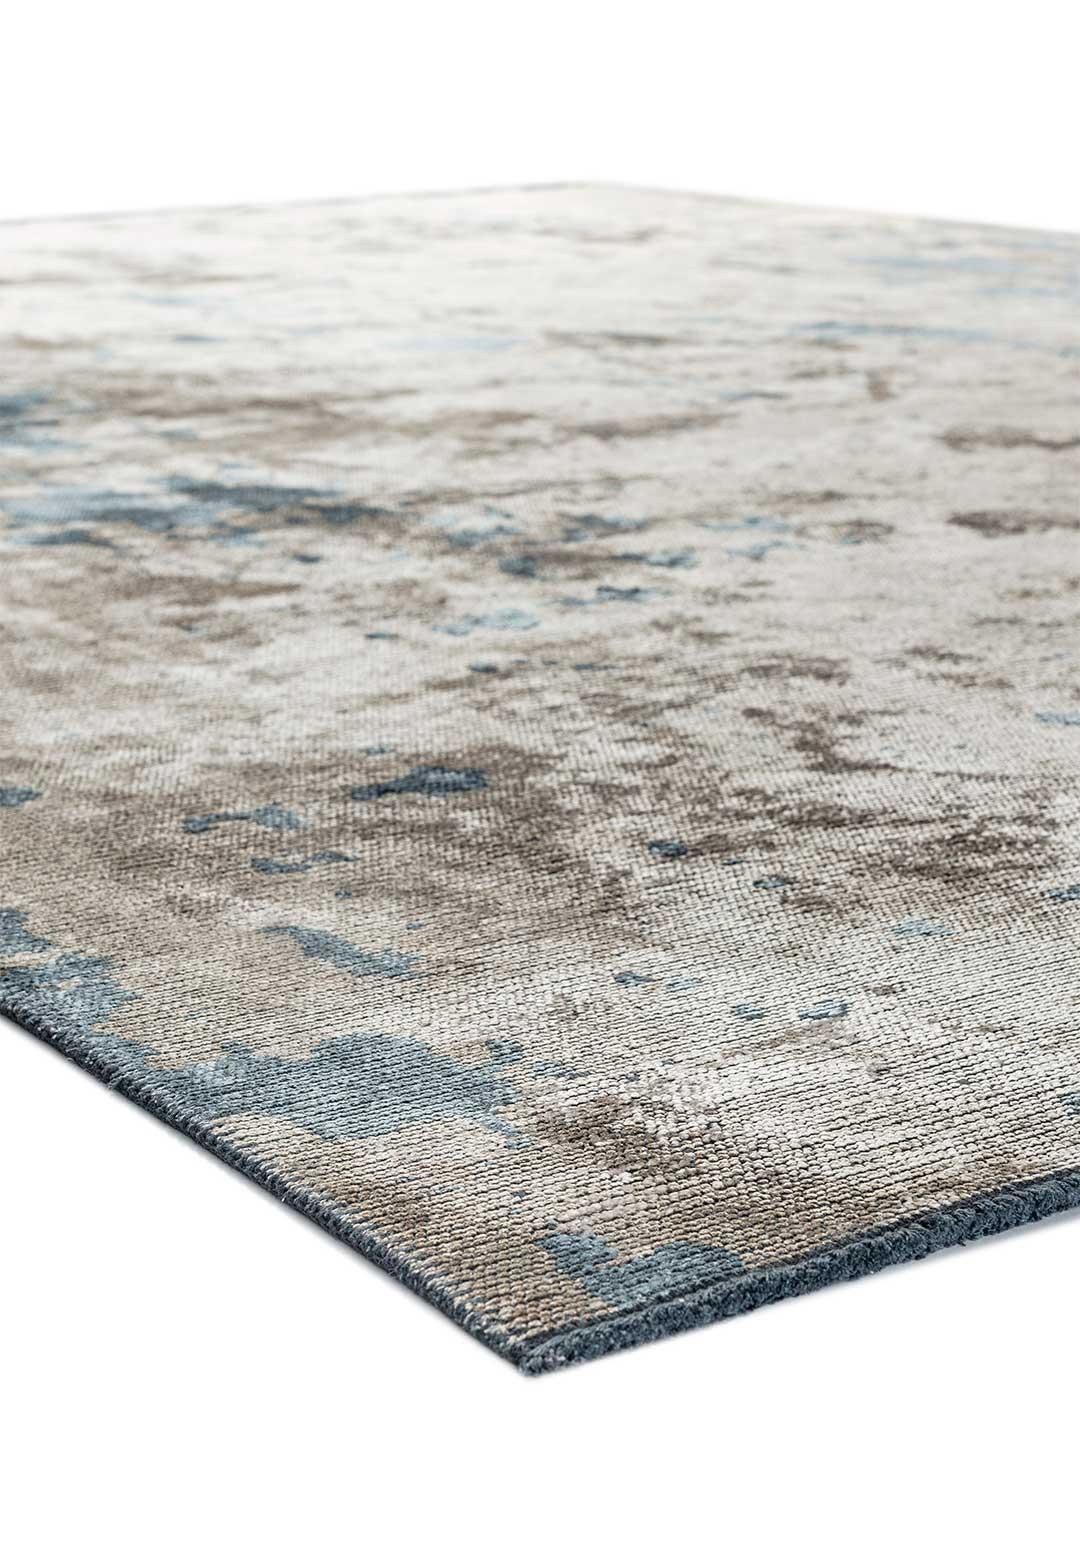 modern rug blue